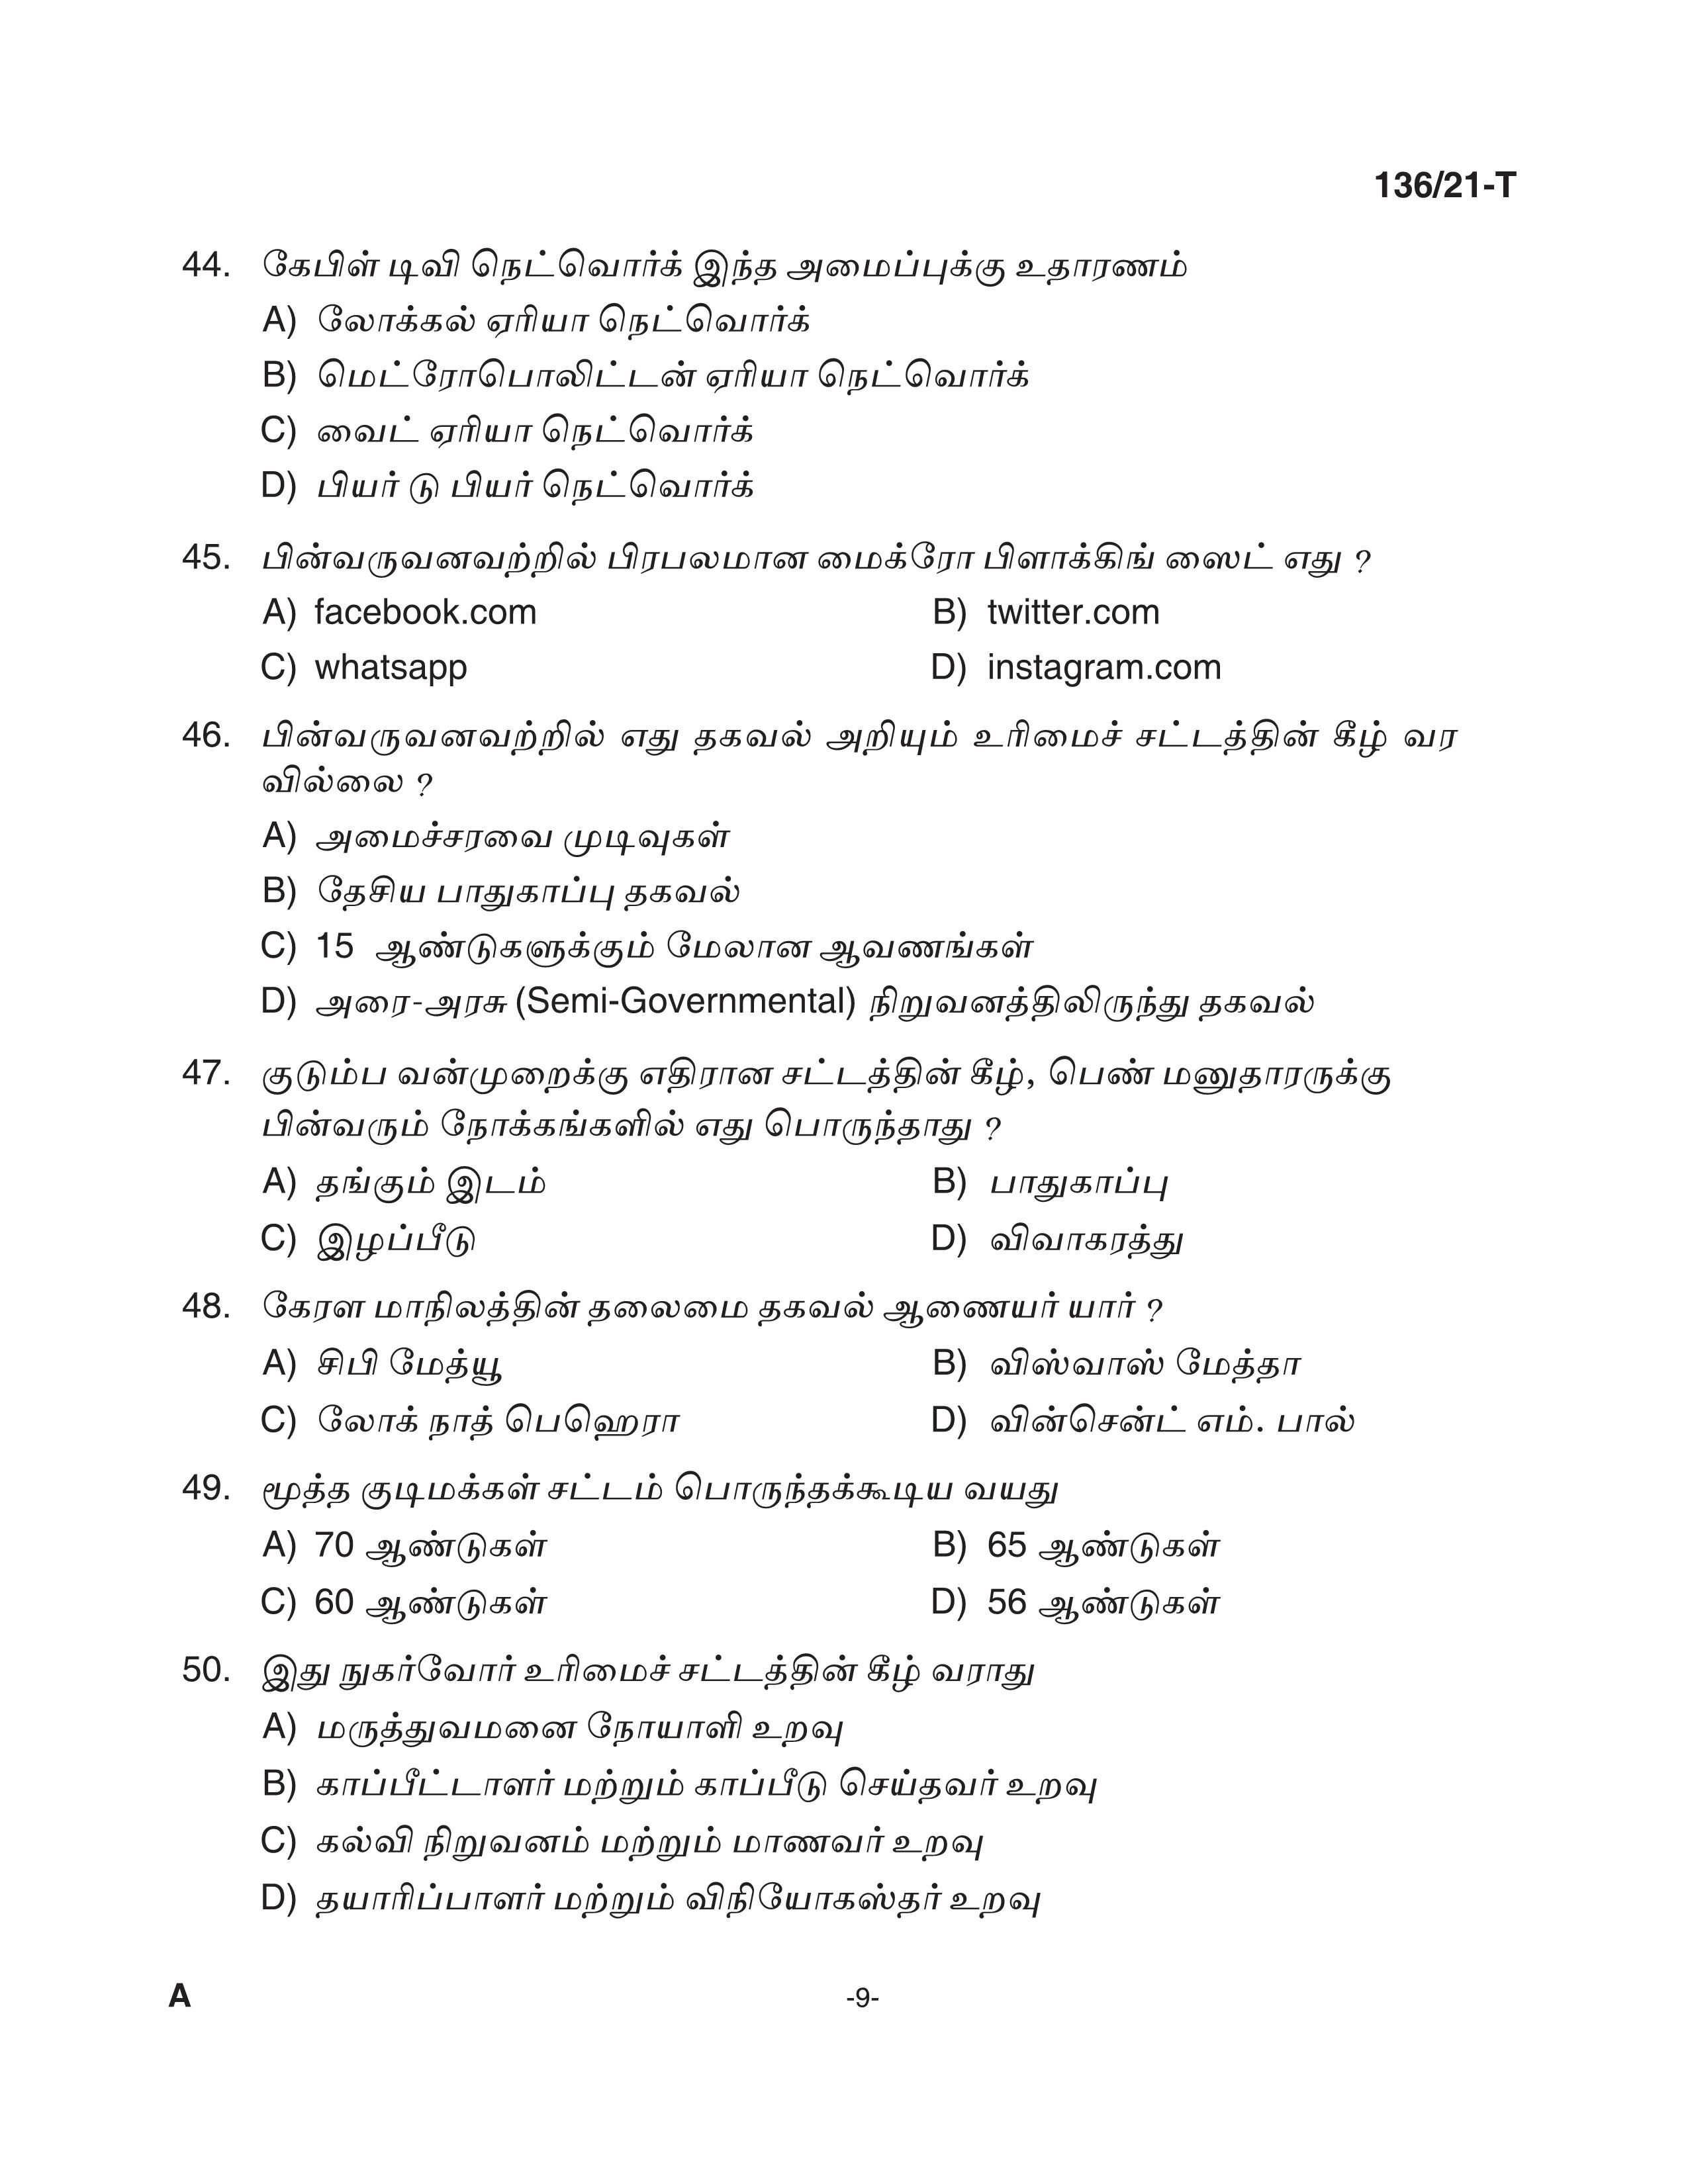 KPSC Village Extension Officer Tamil Exam 2021 Code 1362021 T 8